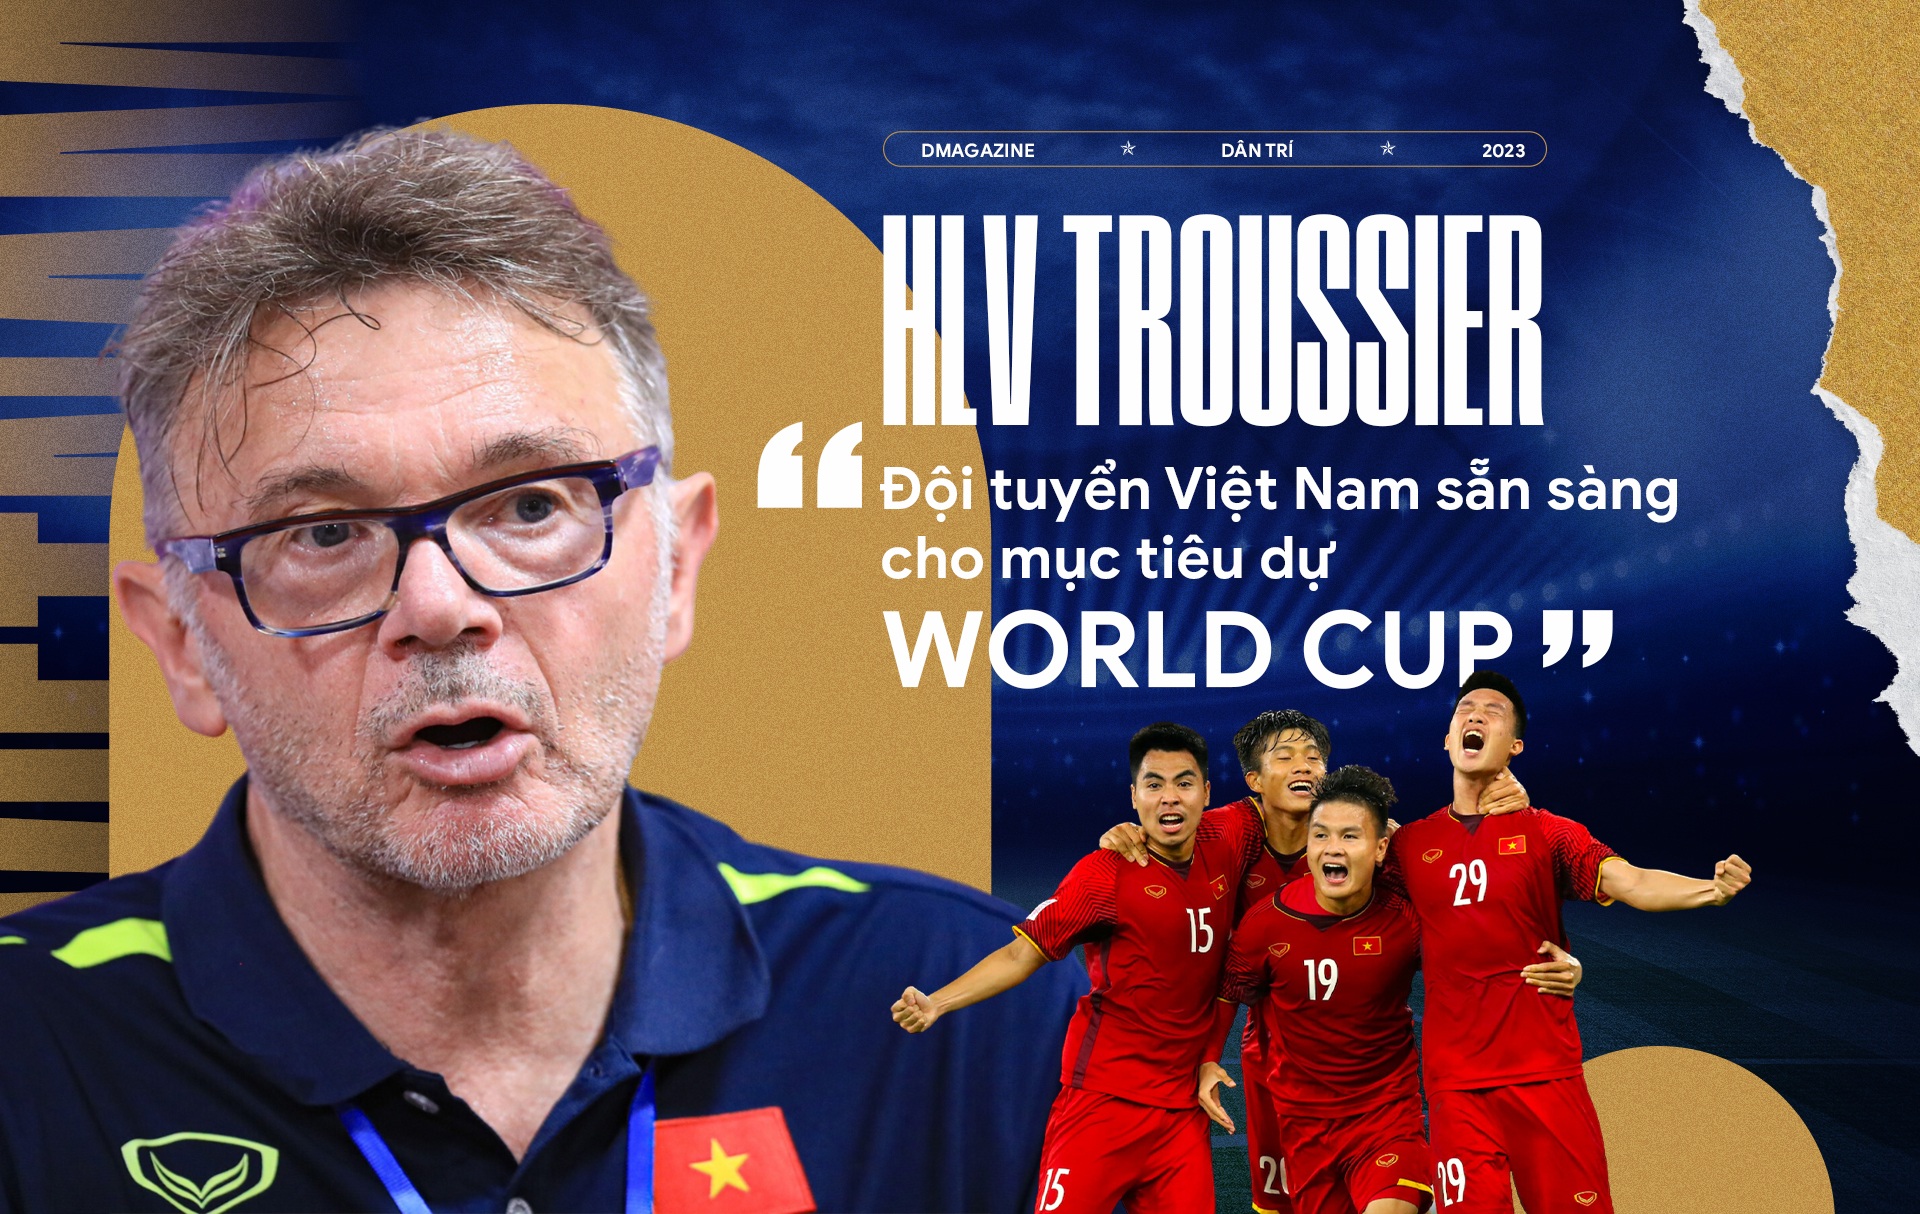 HLV Troussier: "Đội tuyển Việt Nam sẵn sàng cho mục tiêu dự World Cup"